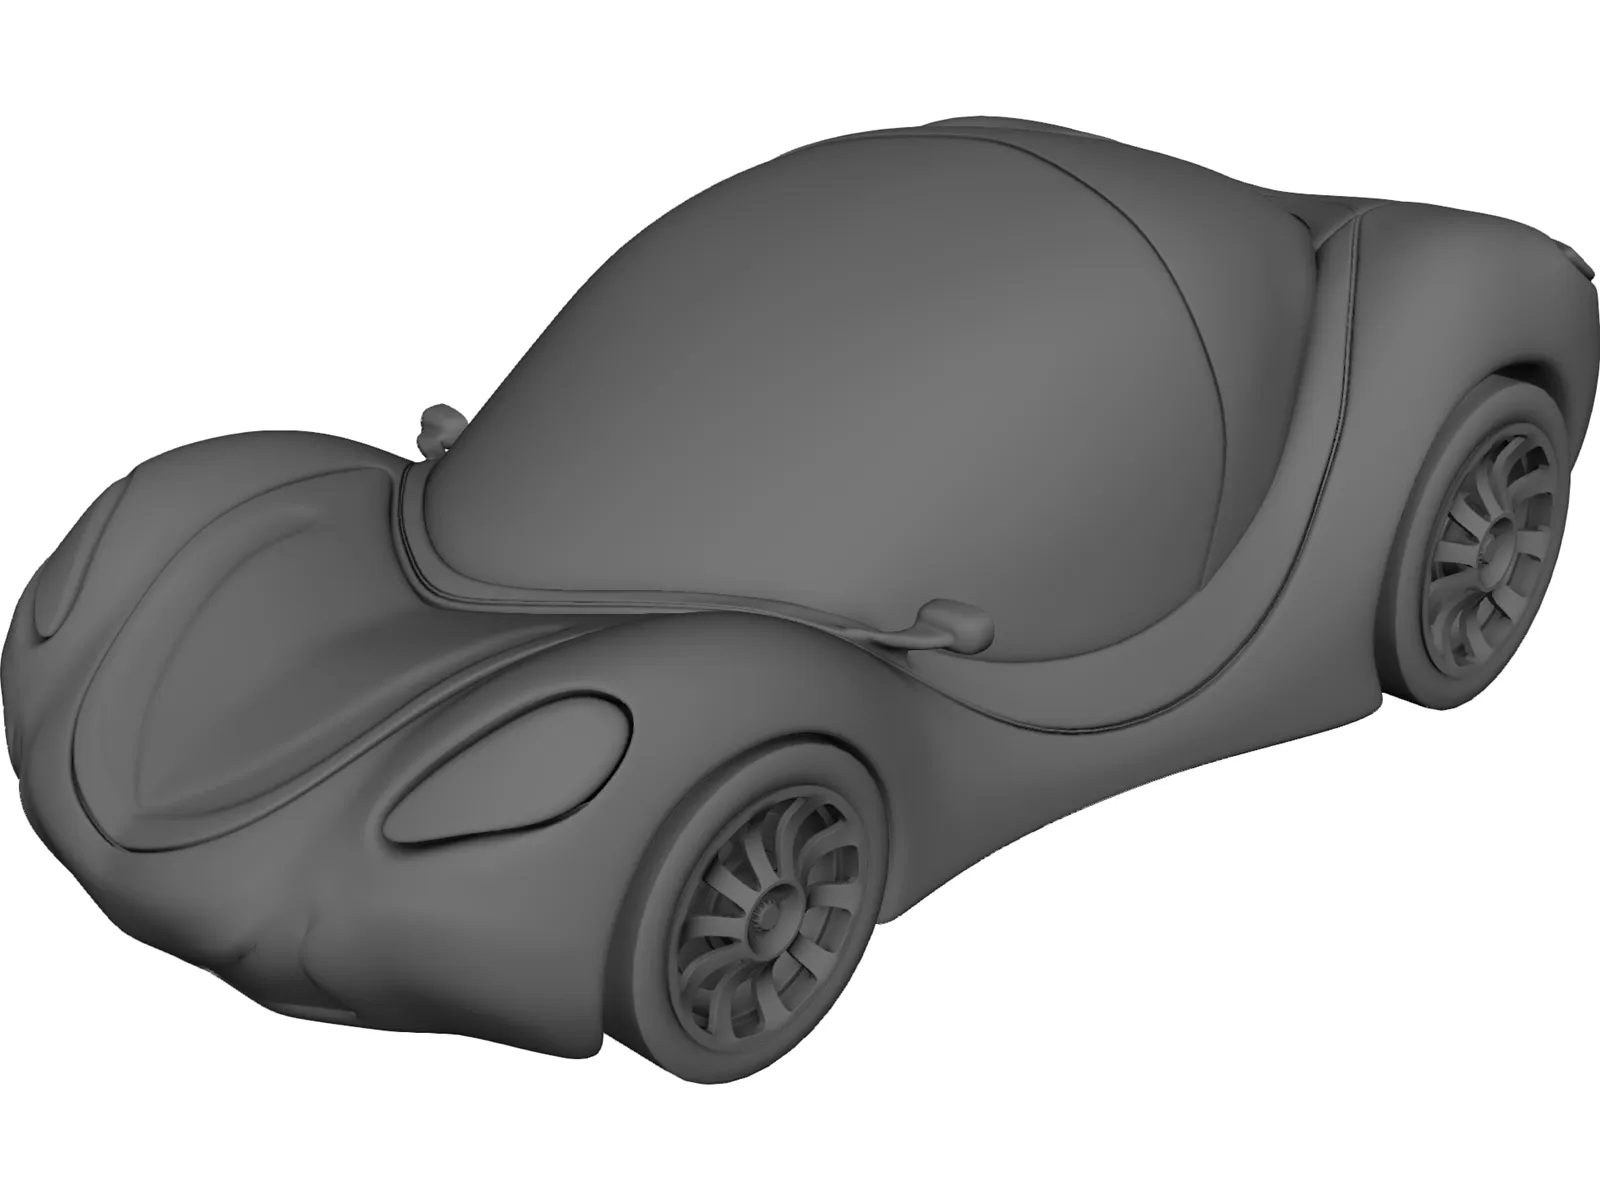 Venus Concept Car 3d Model 3dcadbrowser